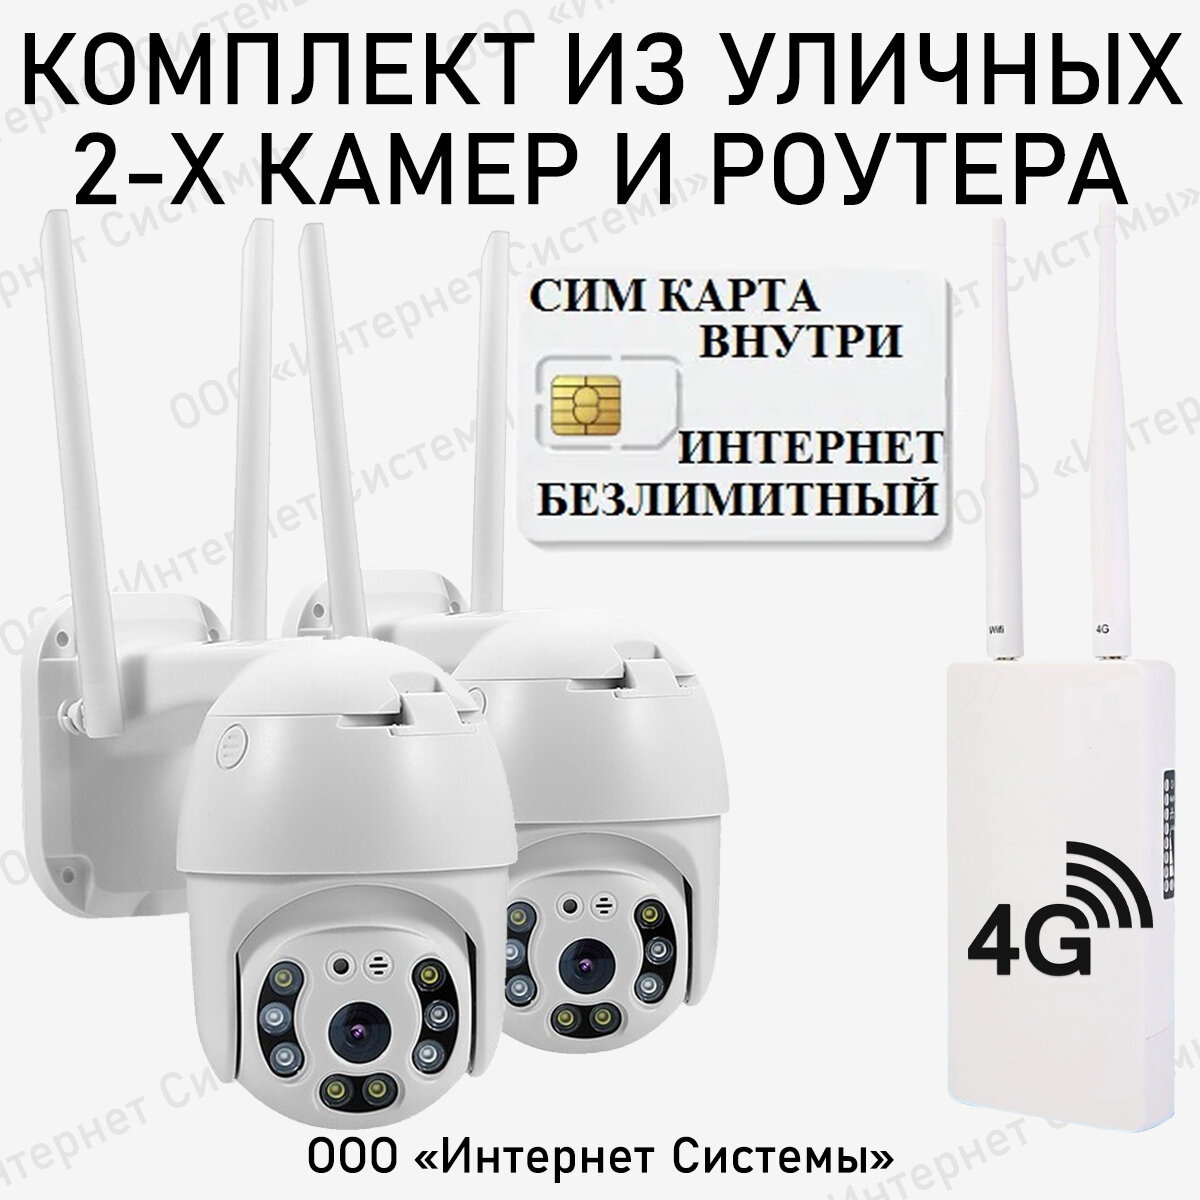 Комплект 2 уличные беспроводные камеры видеонаблюдения WiFi с уличным роутером 4G + сим карта в подарок! smart camera 1080P с обзором 360